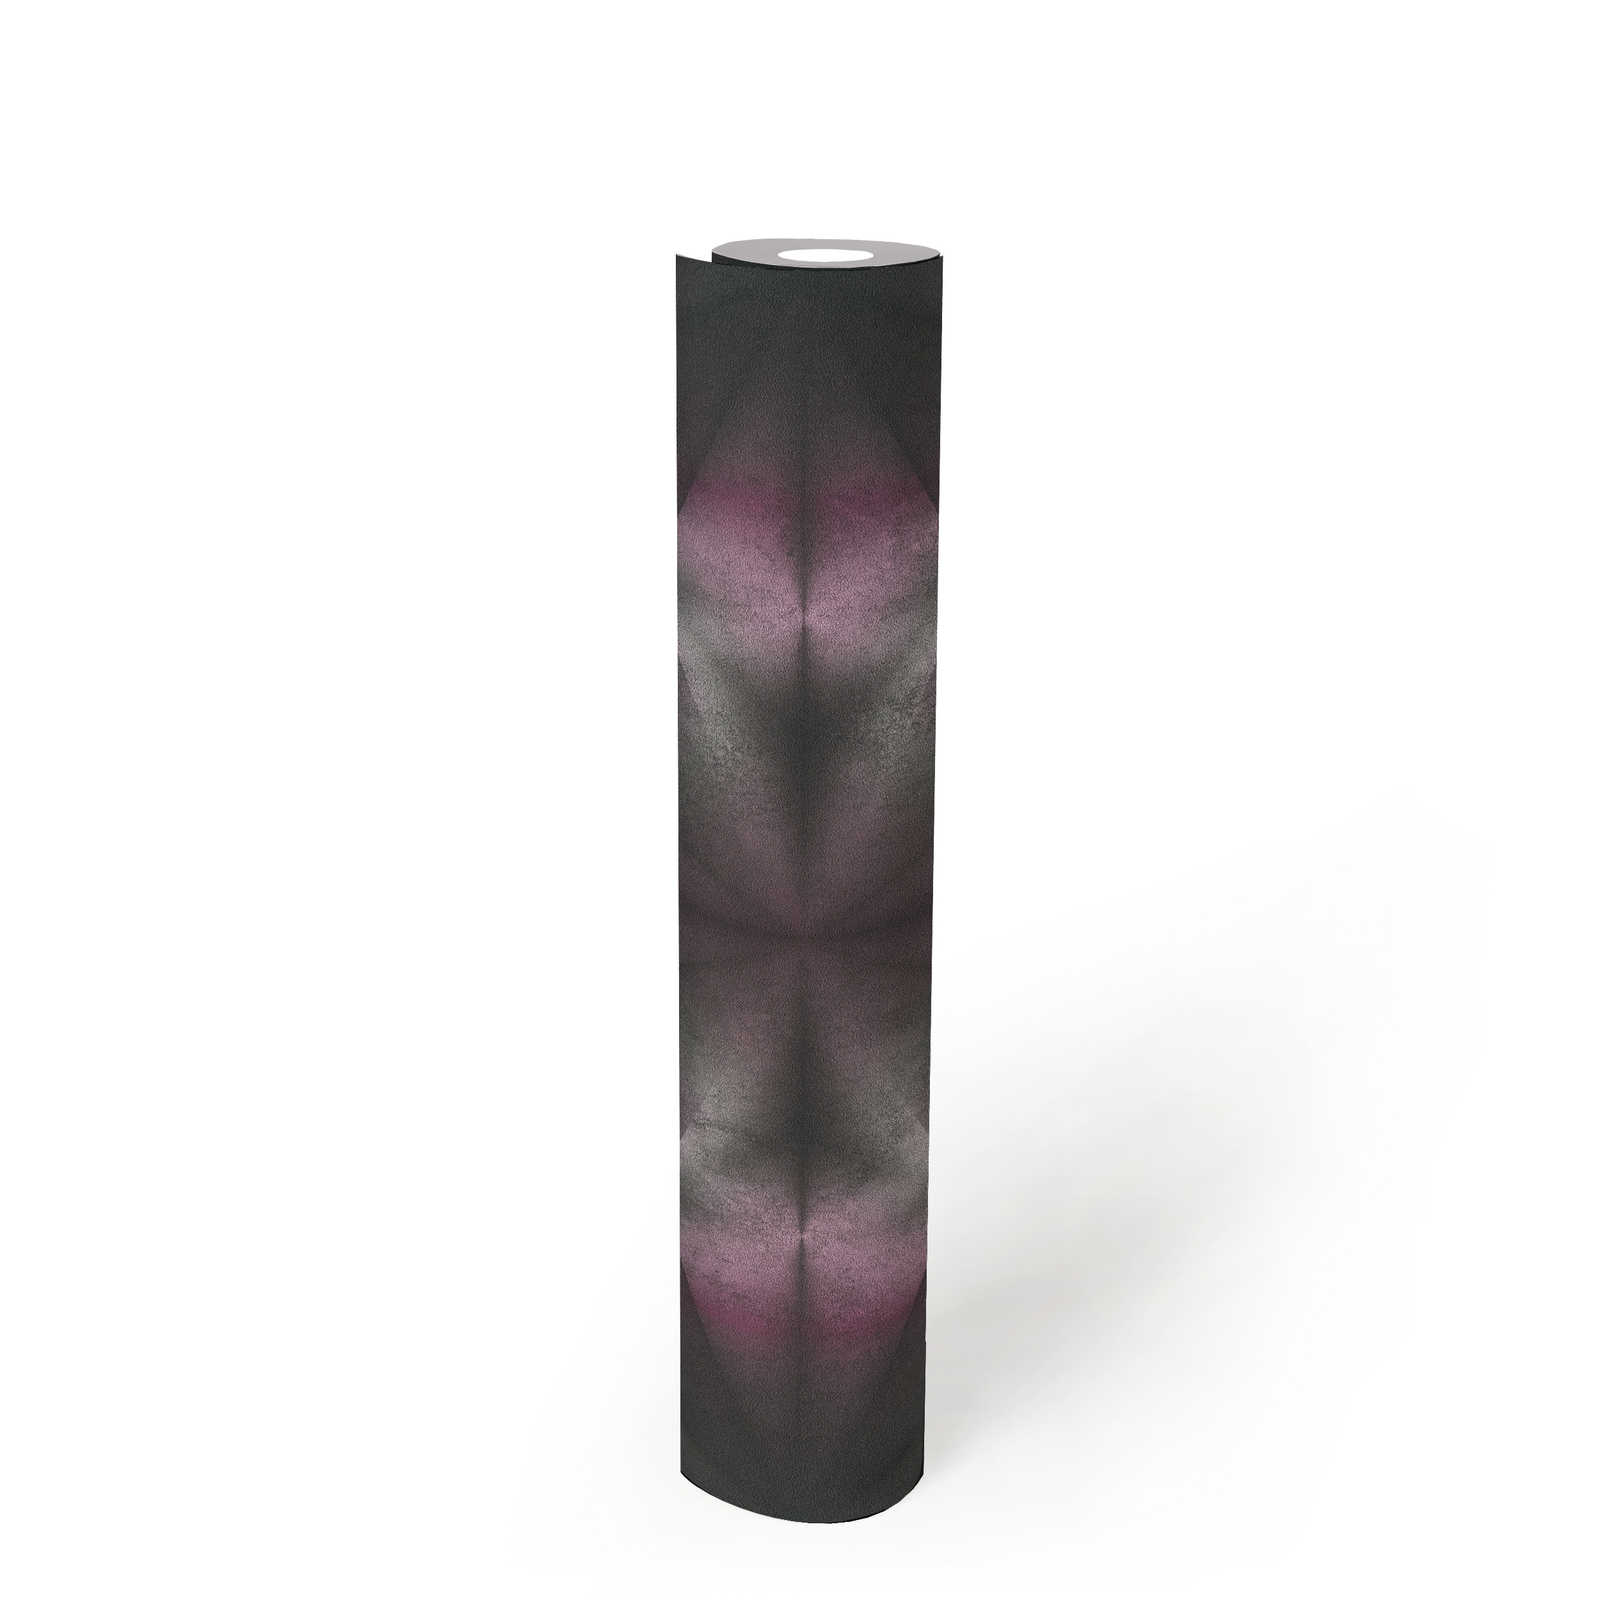             Papier peint design imitation béton & motif graphique - violet, gris, noir
        